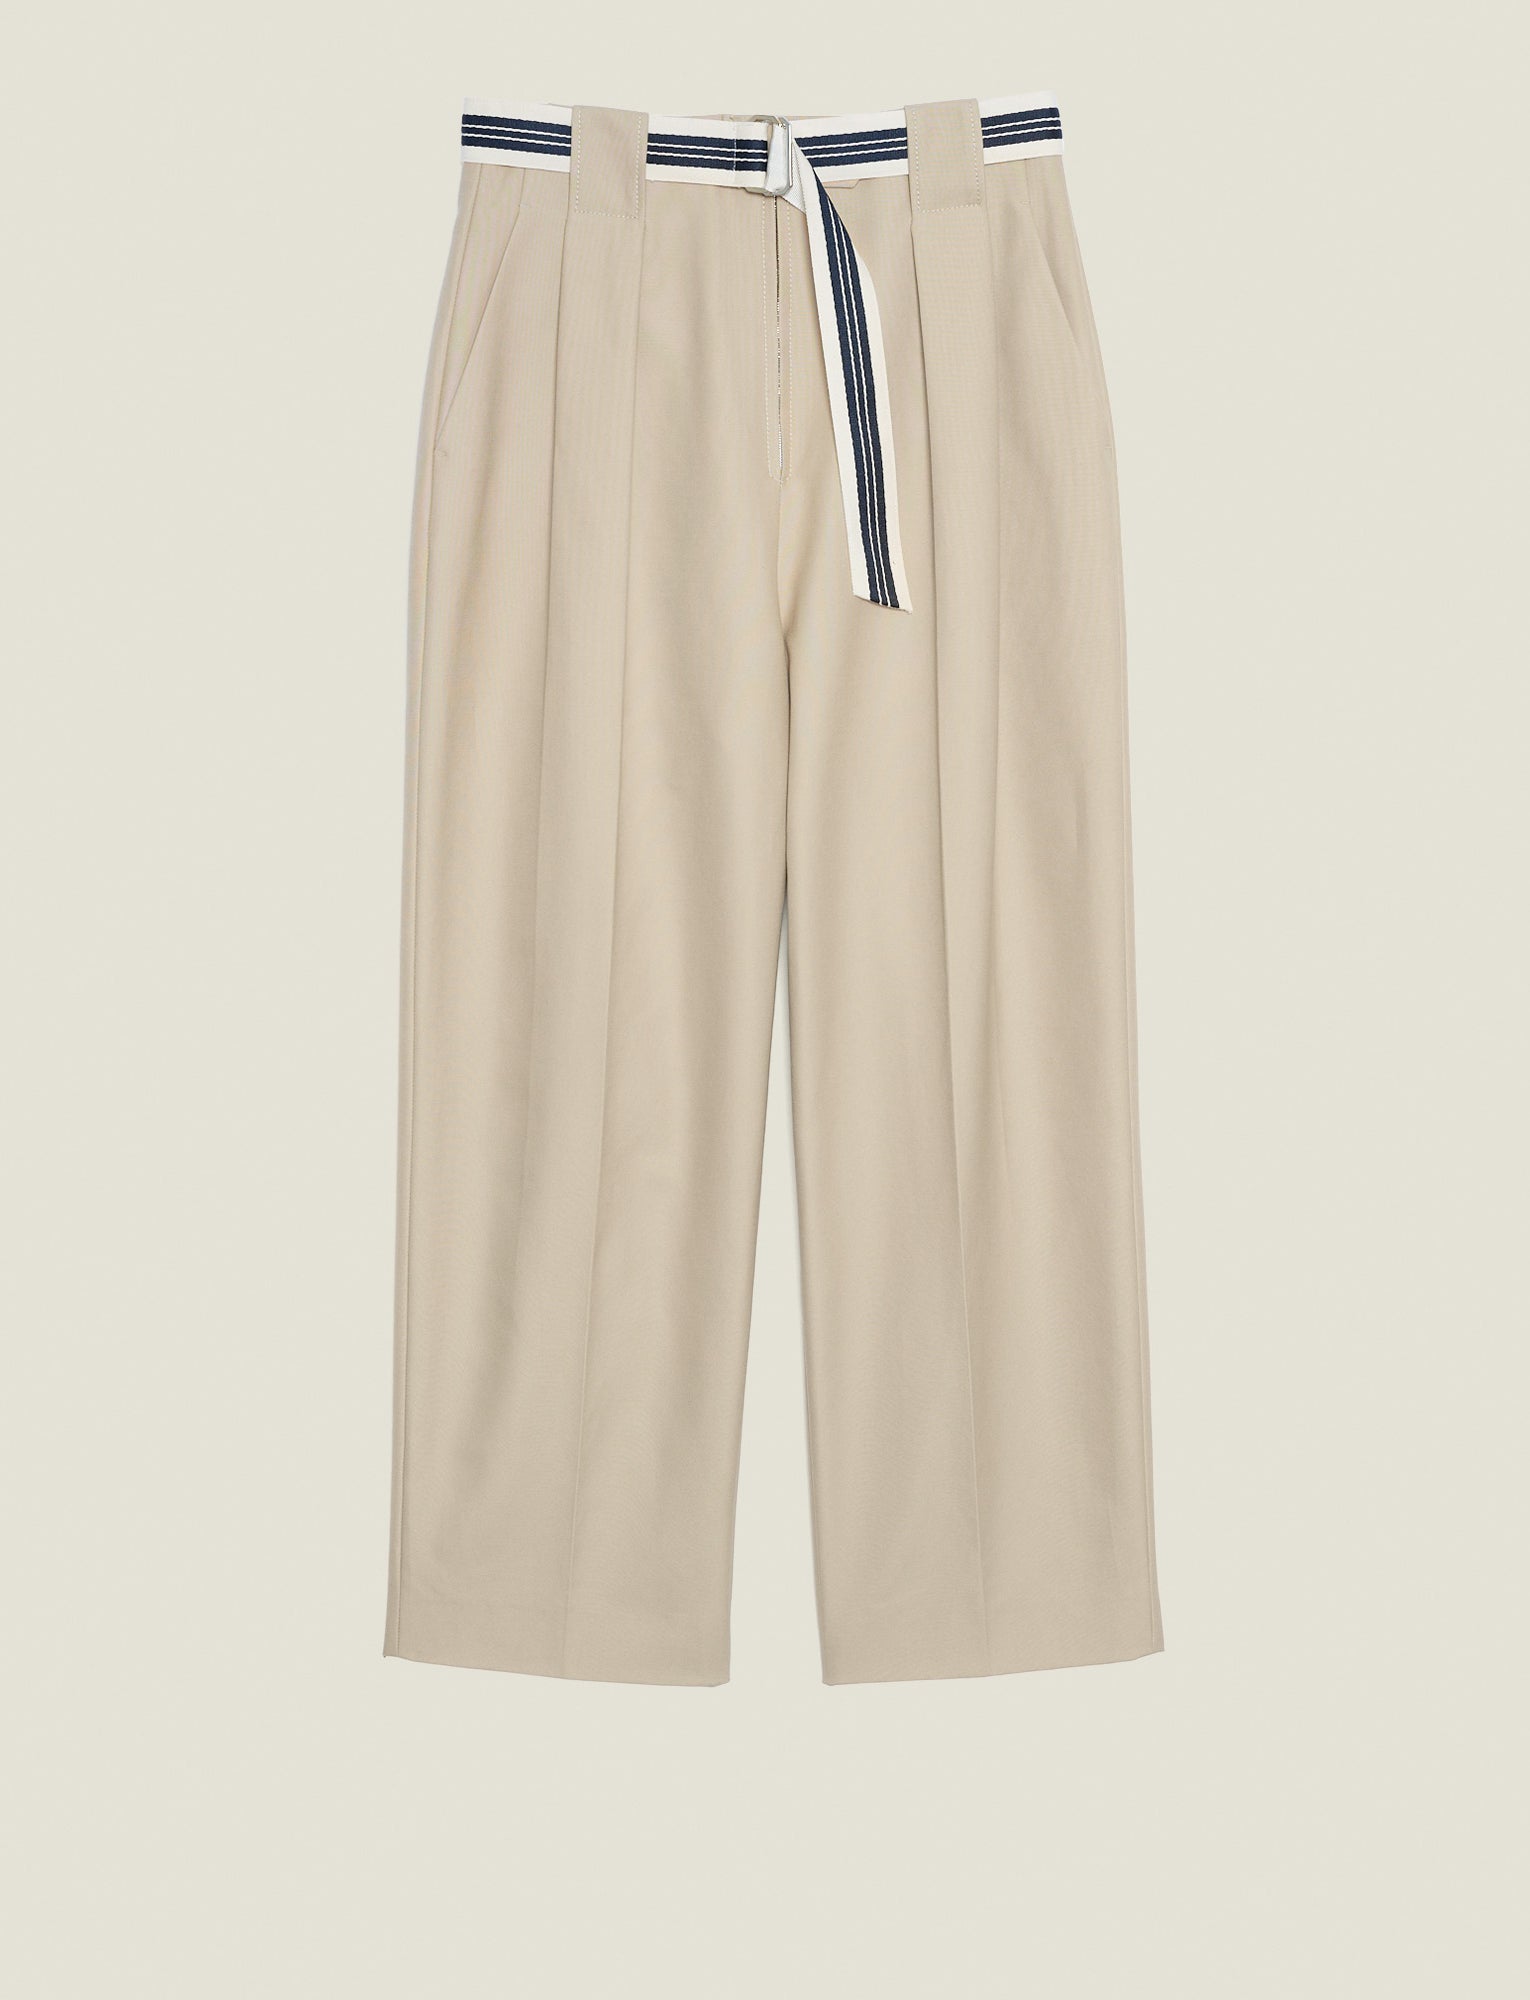 Pantalones anchos de sarga de algodón de talle alto en beige Nylo